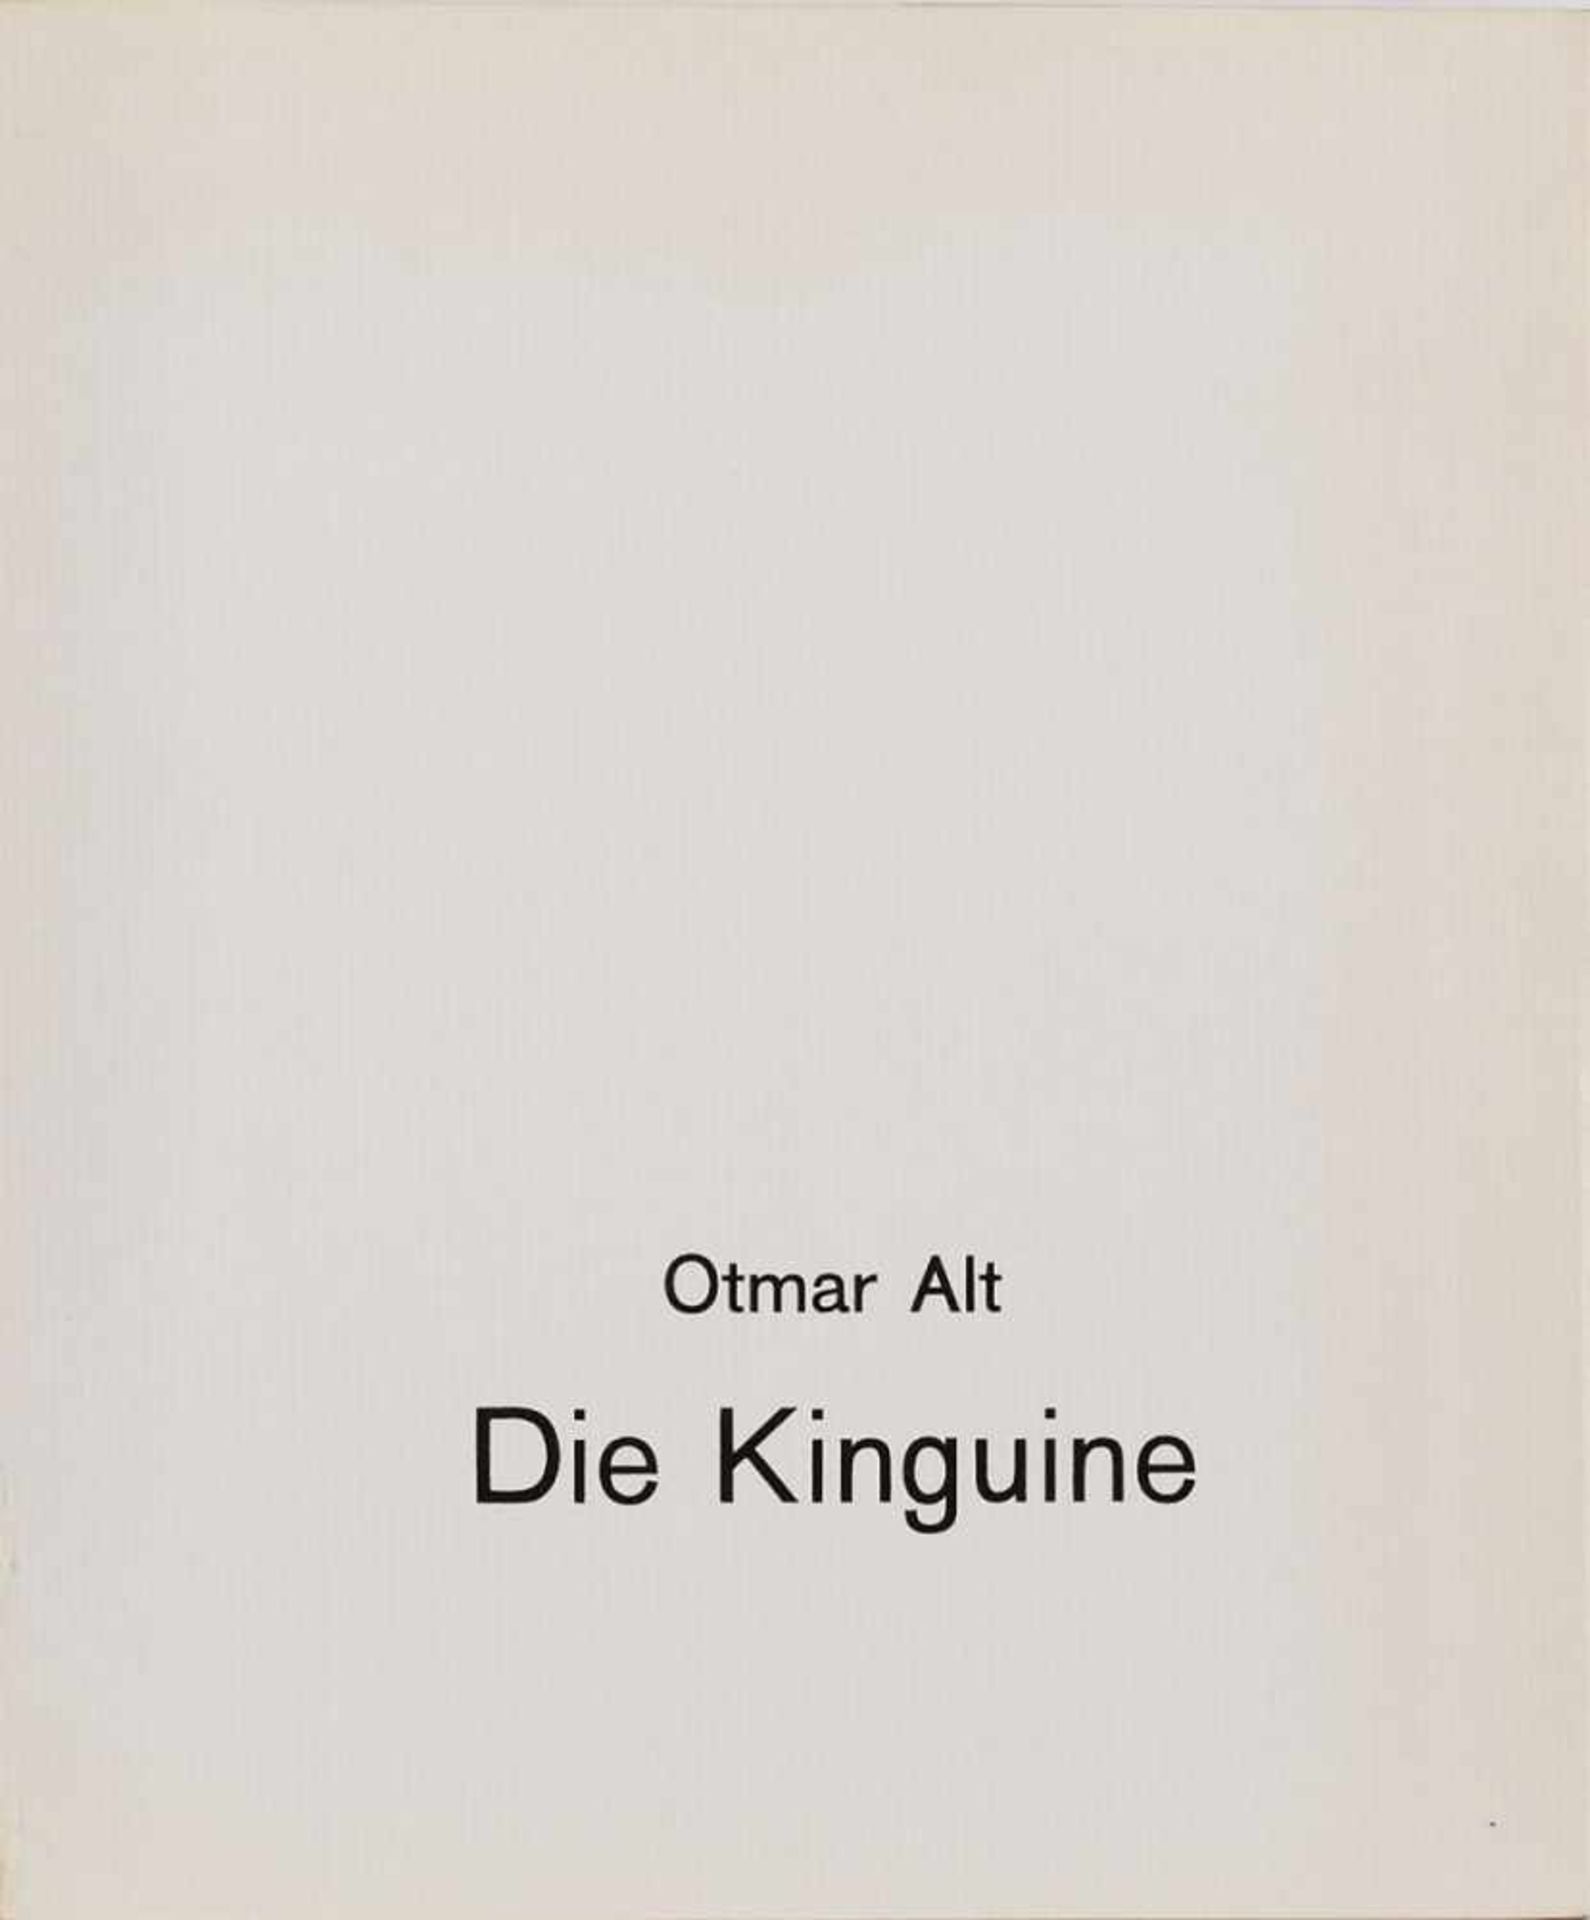 Band Otmar Altgeb. 1940 in Wernigerode "Die Kinguine" 1968 im Impressum sign. Otmar Alt Exemplar - Bild 2 aus 5